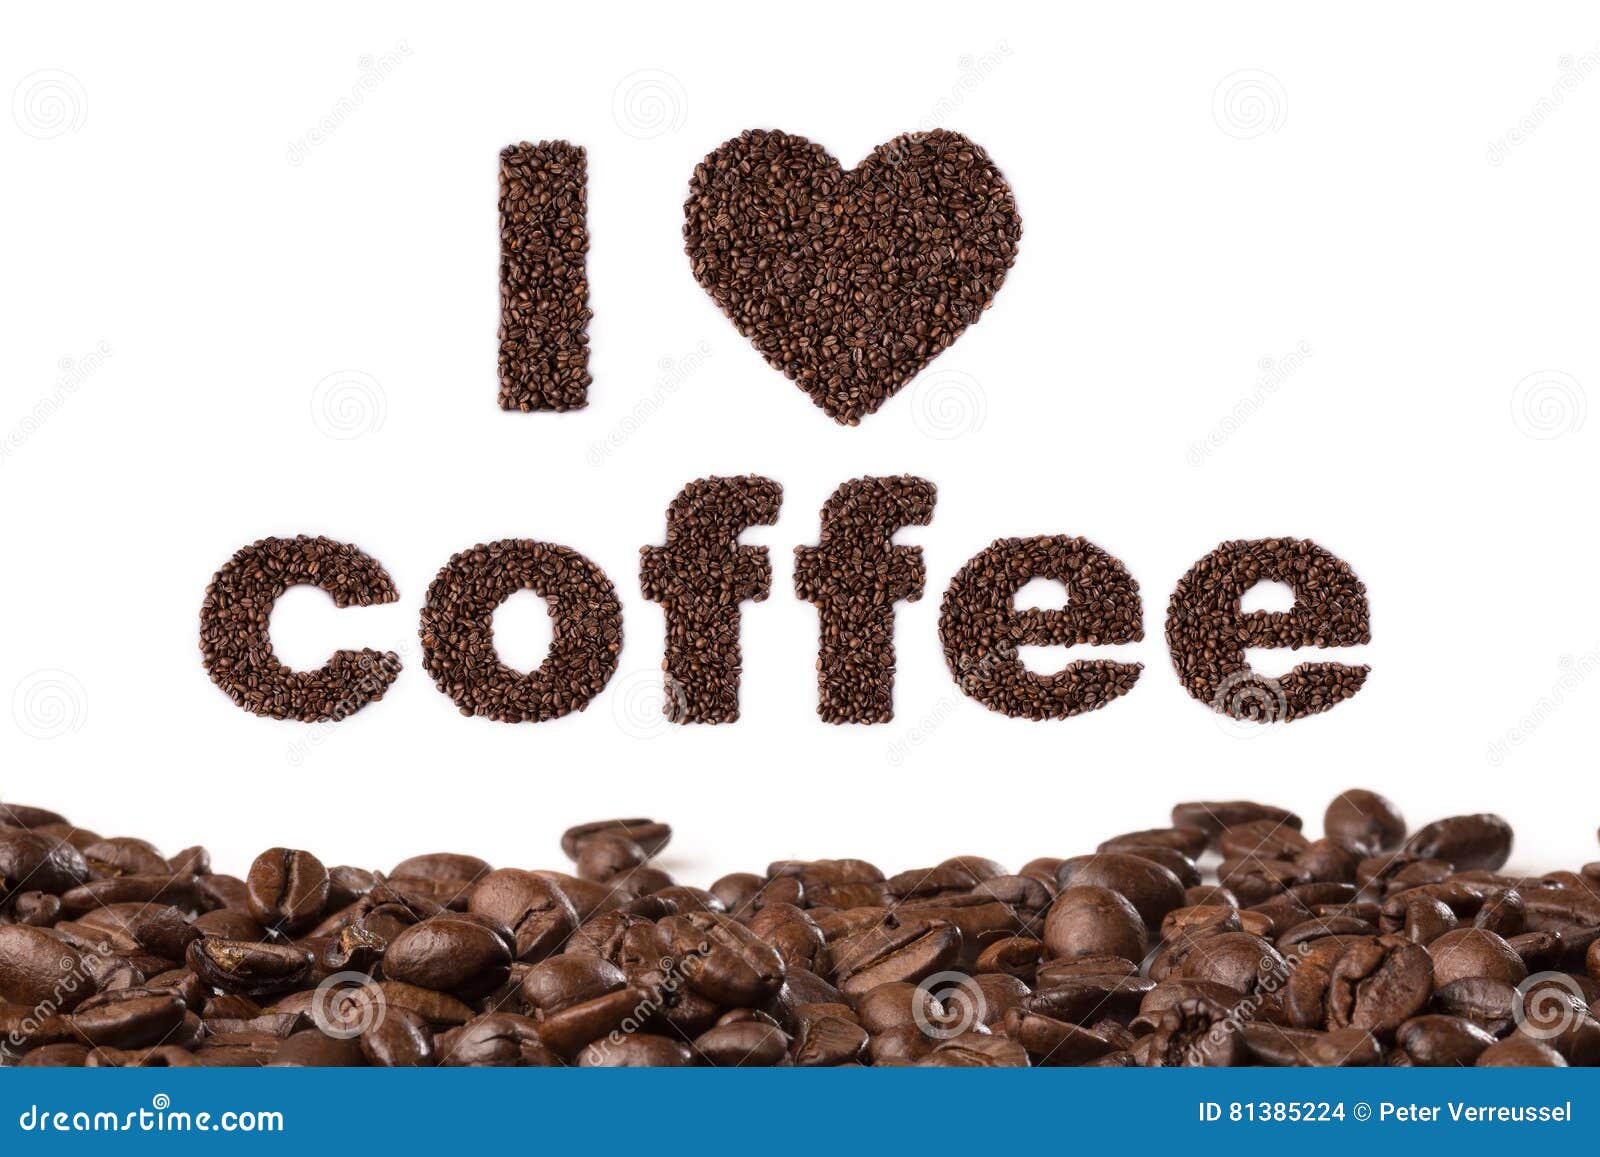 Переведи на английский кофе. Что написать на кофе. Я люблю кофе кофе любит меня. Надпись я люблю кофе. Кофе на английском.